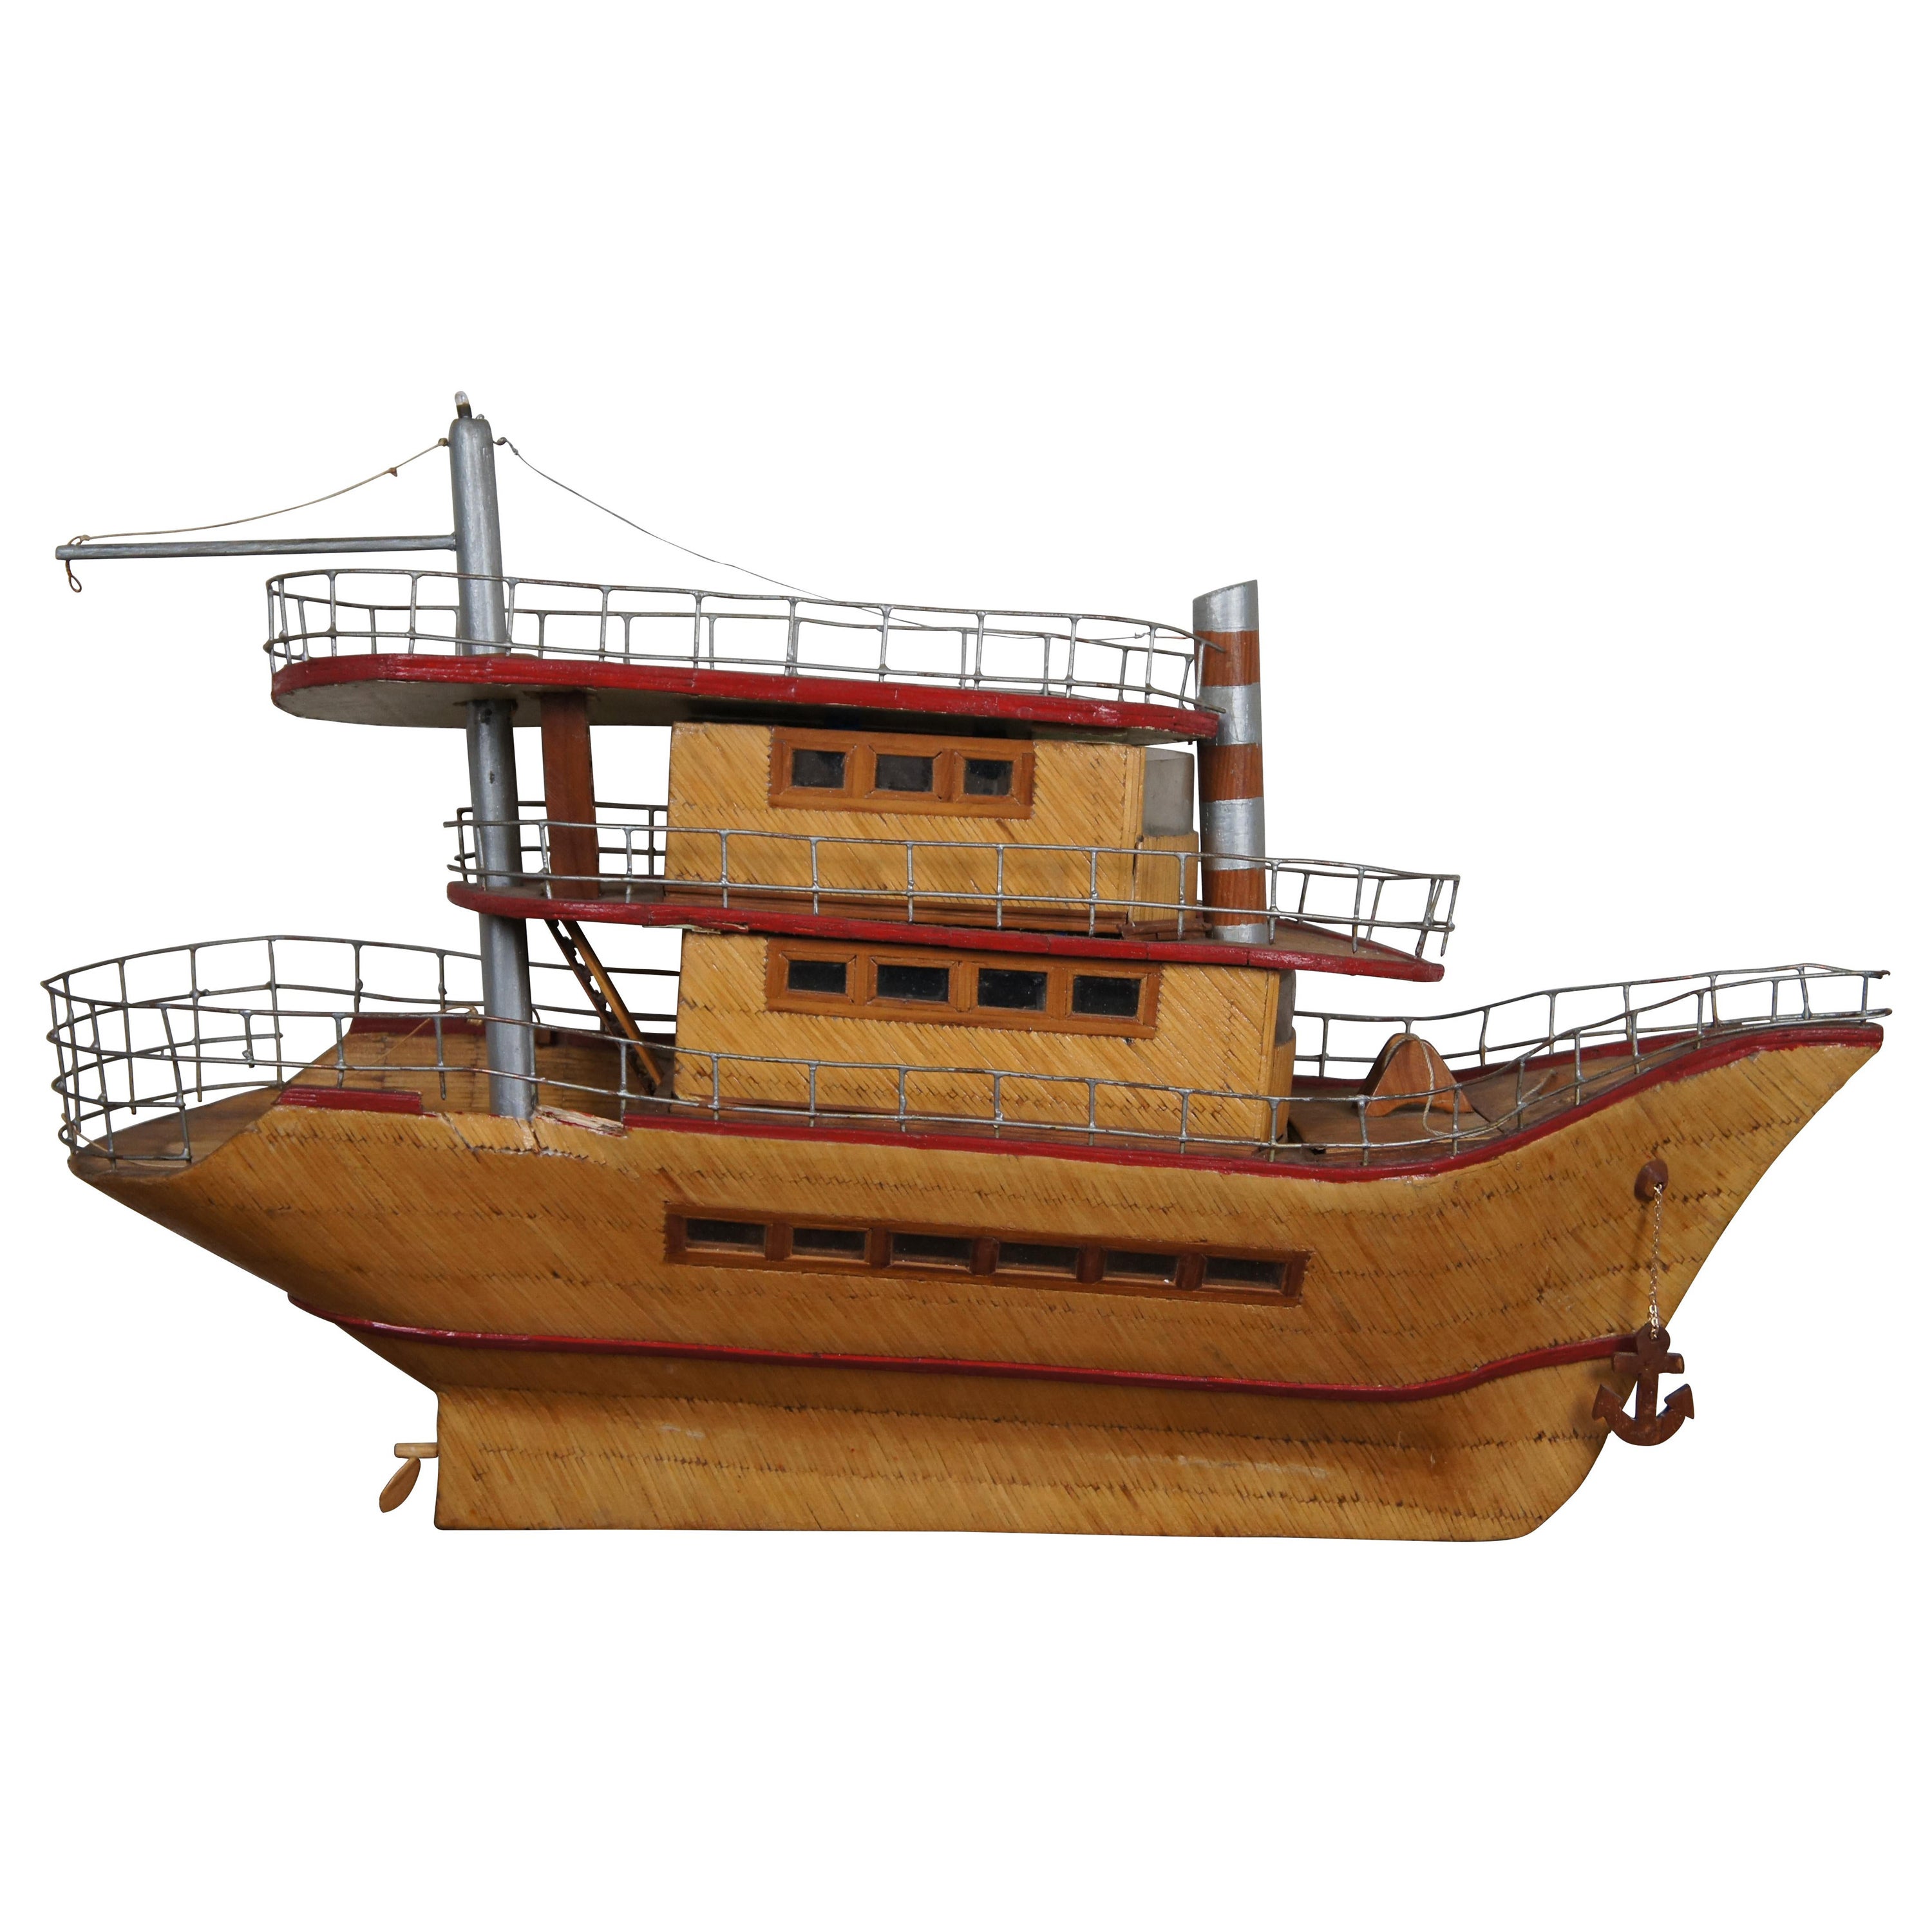 Prison Folk Art Matchstick Model Boat Ship Maritime Night Light Sculpture 31"